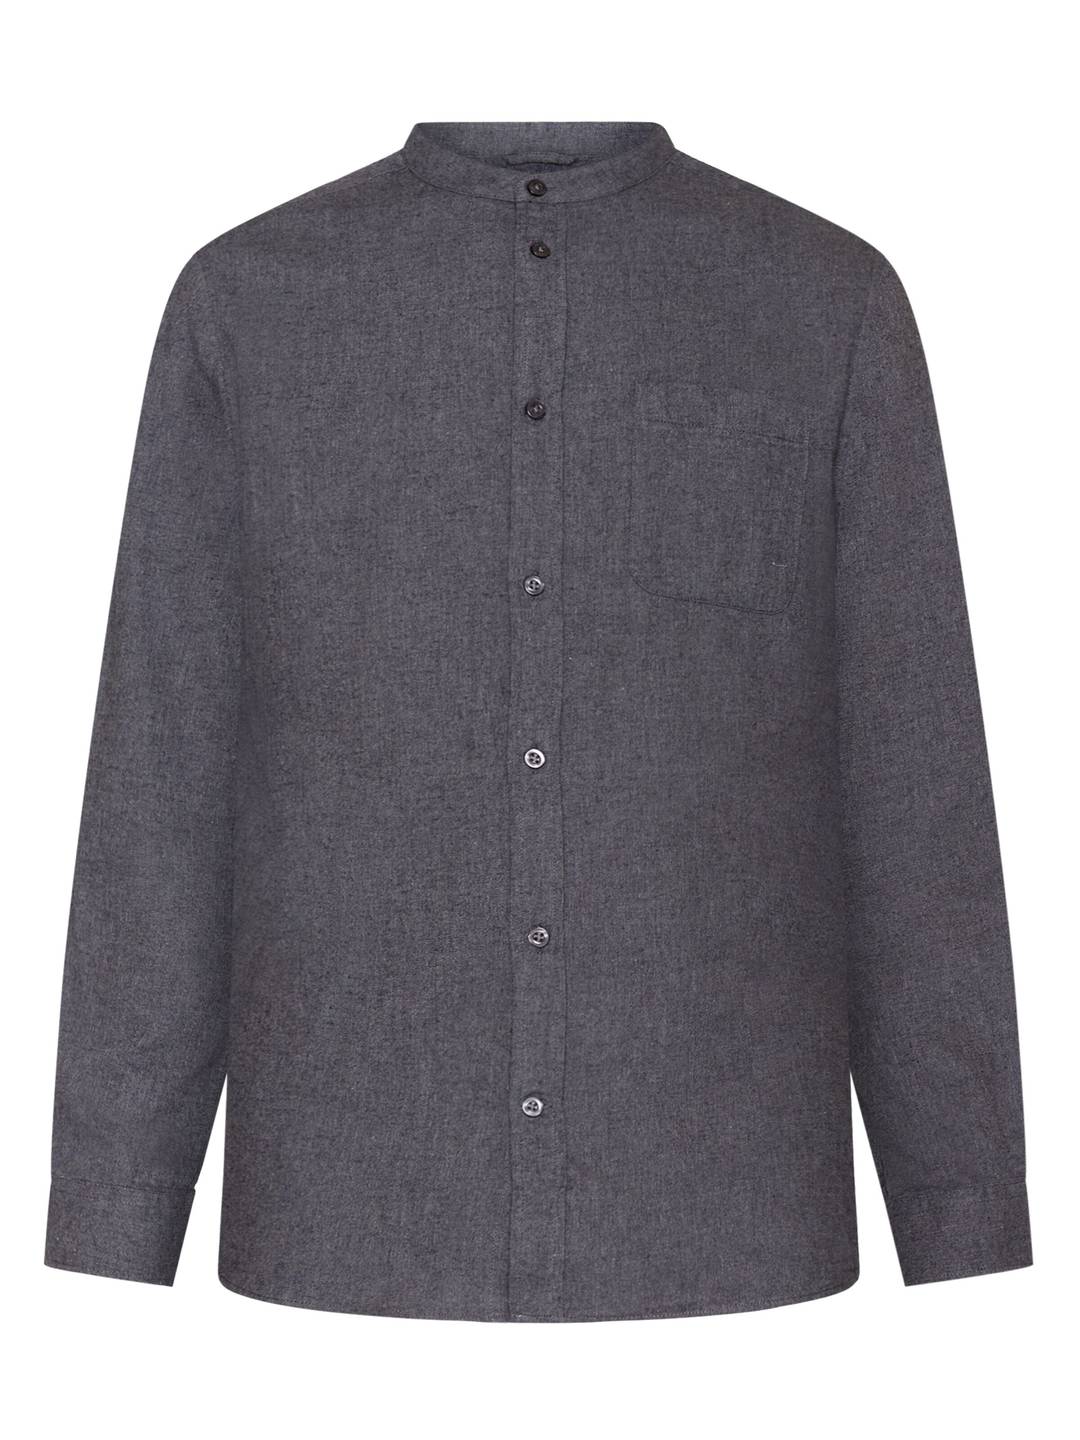 Hemd Regular fit melangé flannel stand collar dark grey melange von KnowledgeCotton Apparel